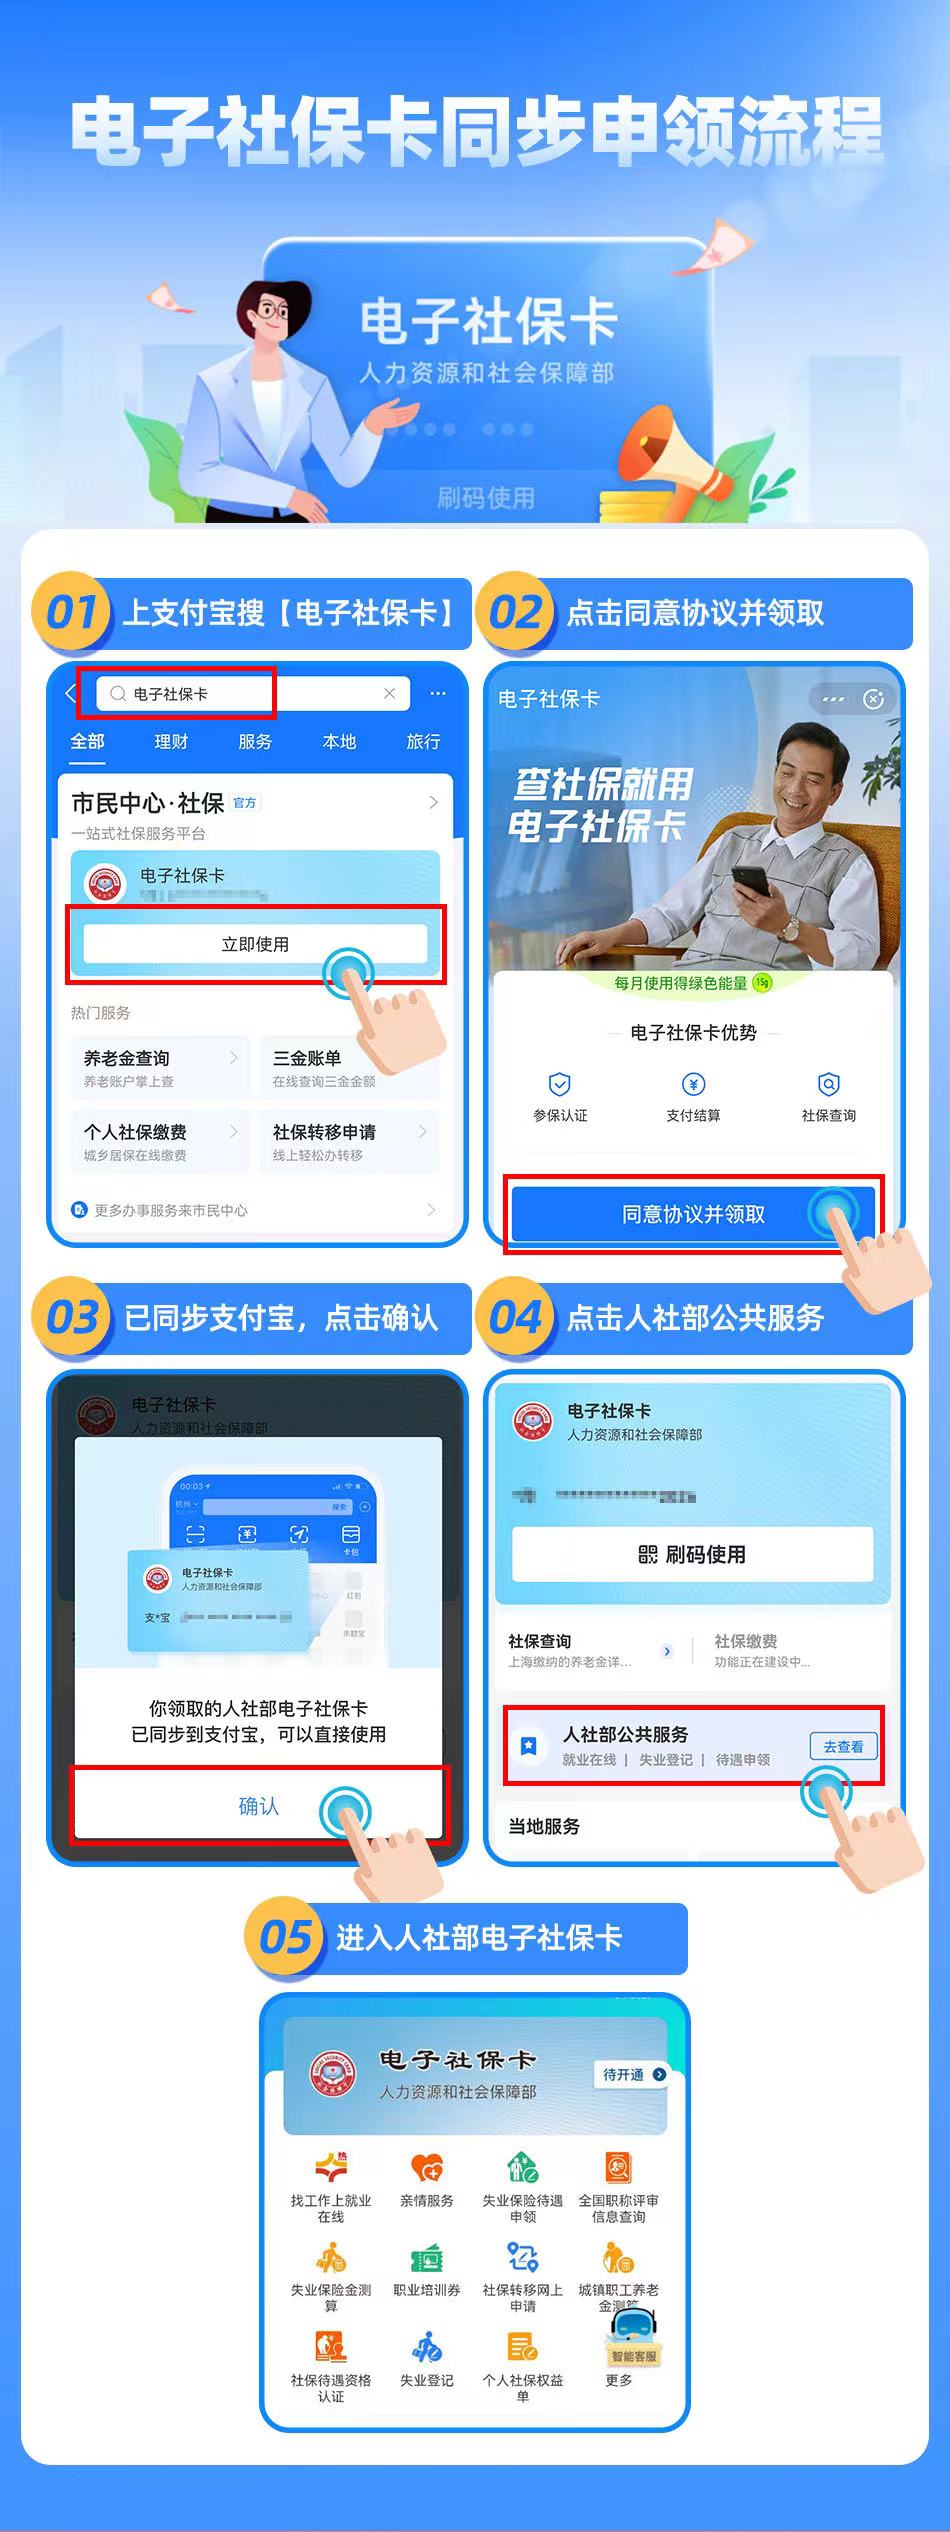 申领流程   支付宝供图 华龙网-新重庆客户端 发